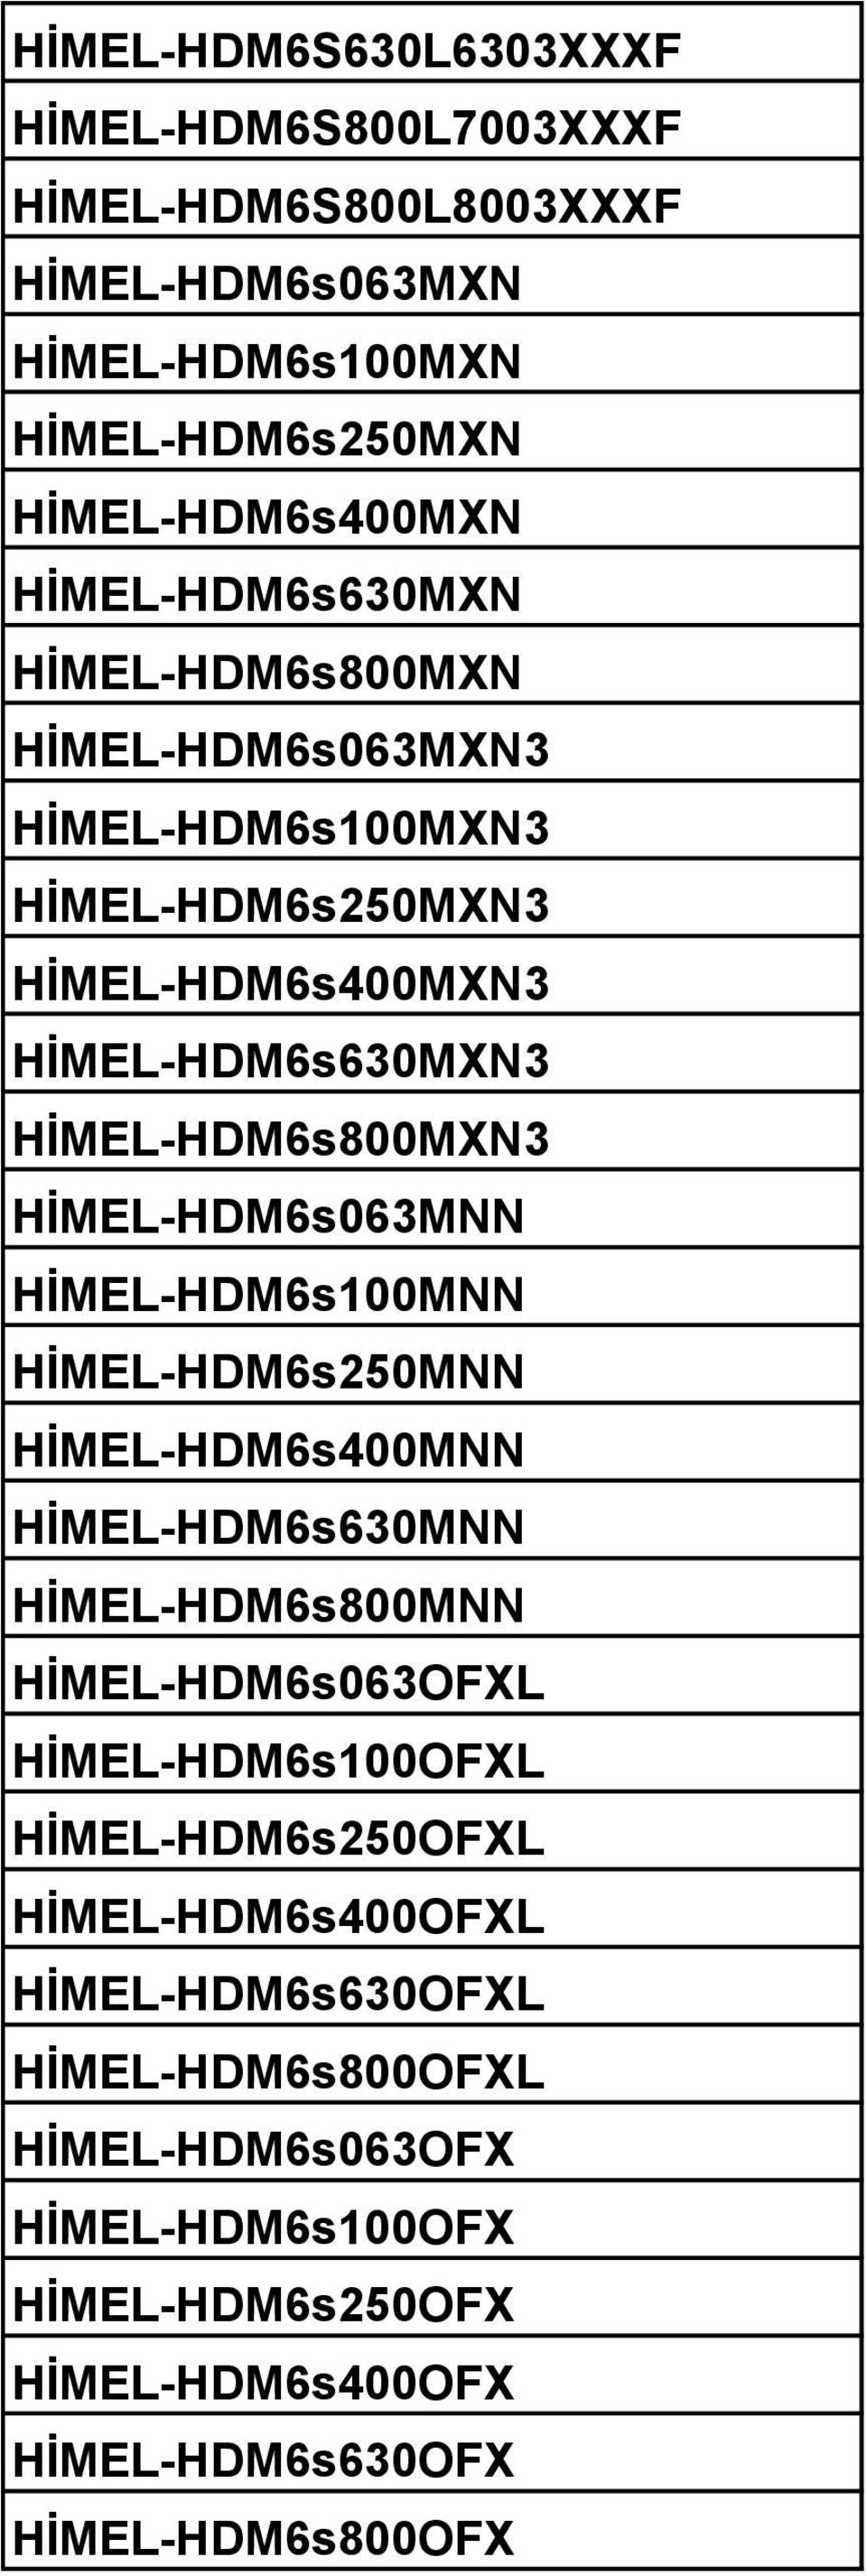 HİMEL-HDM6s063MNN HİMEL-HDM6s100MNN HİMEL-HDM6s250MNN HİMEL-HDM6s400MNN HİMEL-HDM6s630MNN HİMEL-HDM6s800MNN HİMEL-HDM6s063OFXL HİMEL-HDM6s100OFXL